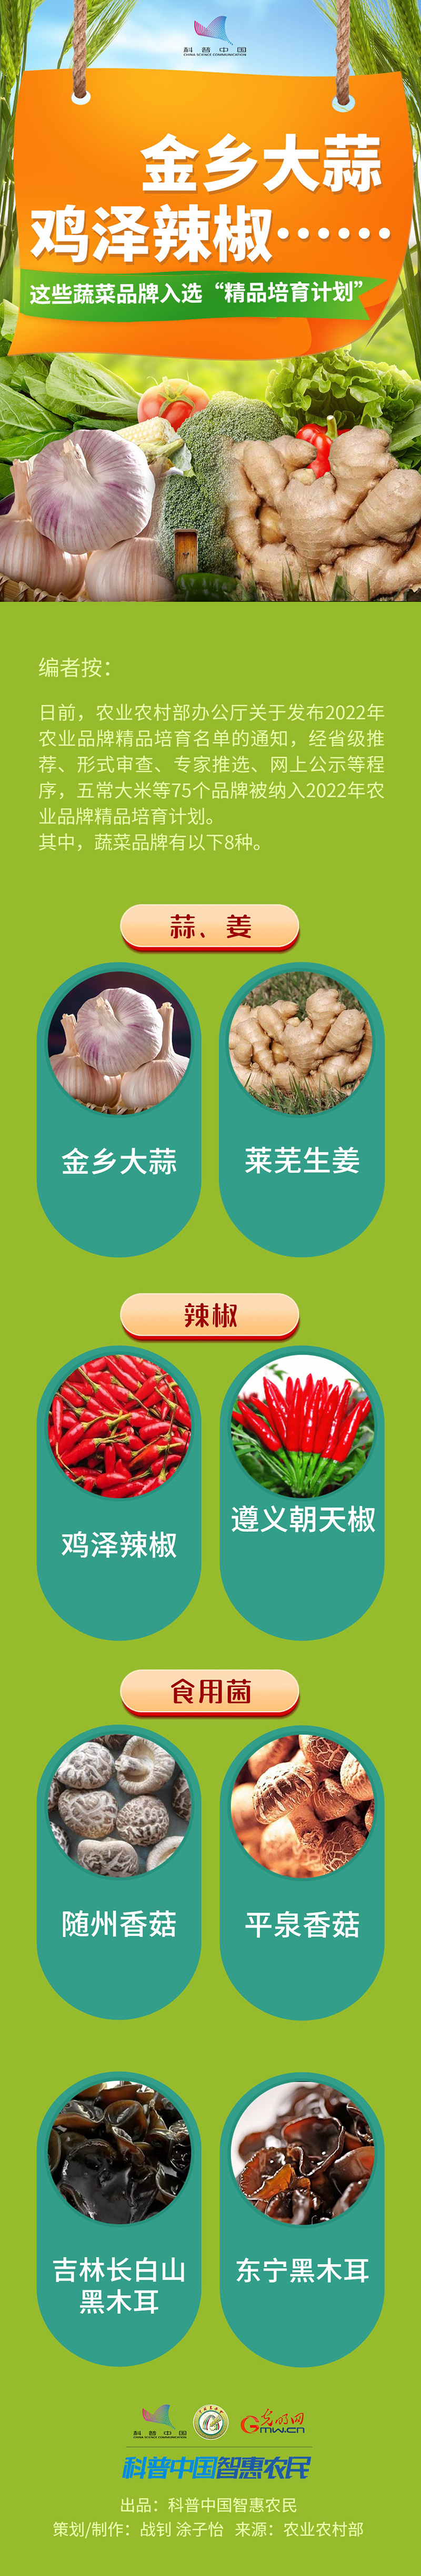 【一图读懂】金乡大蒜、鸡泽辣椒……这些蔬菜品牌入选“精品培育计划”